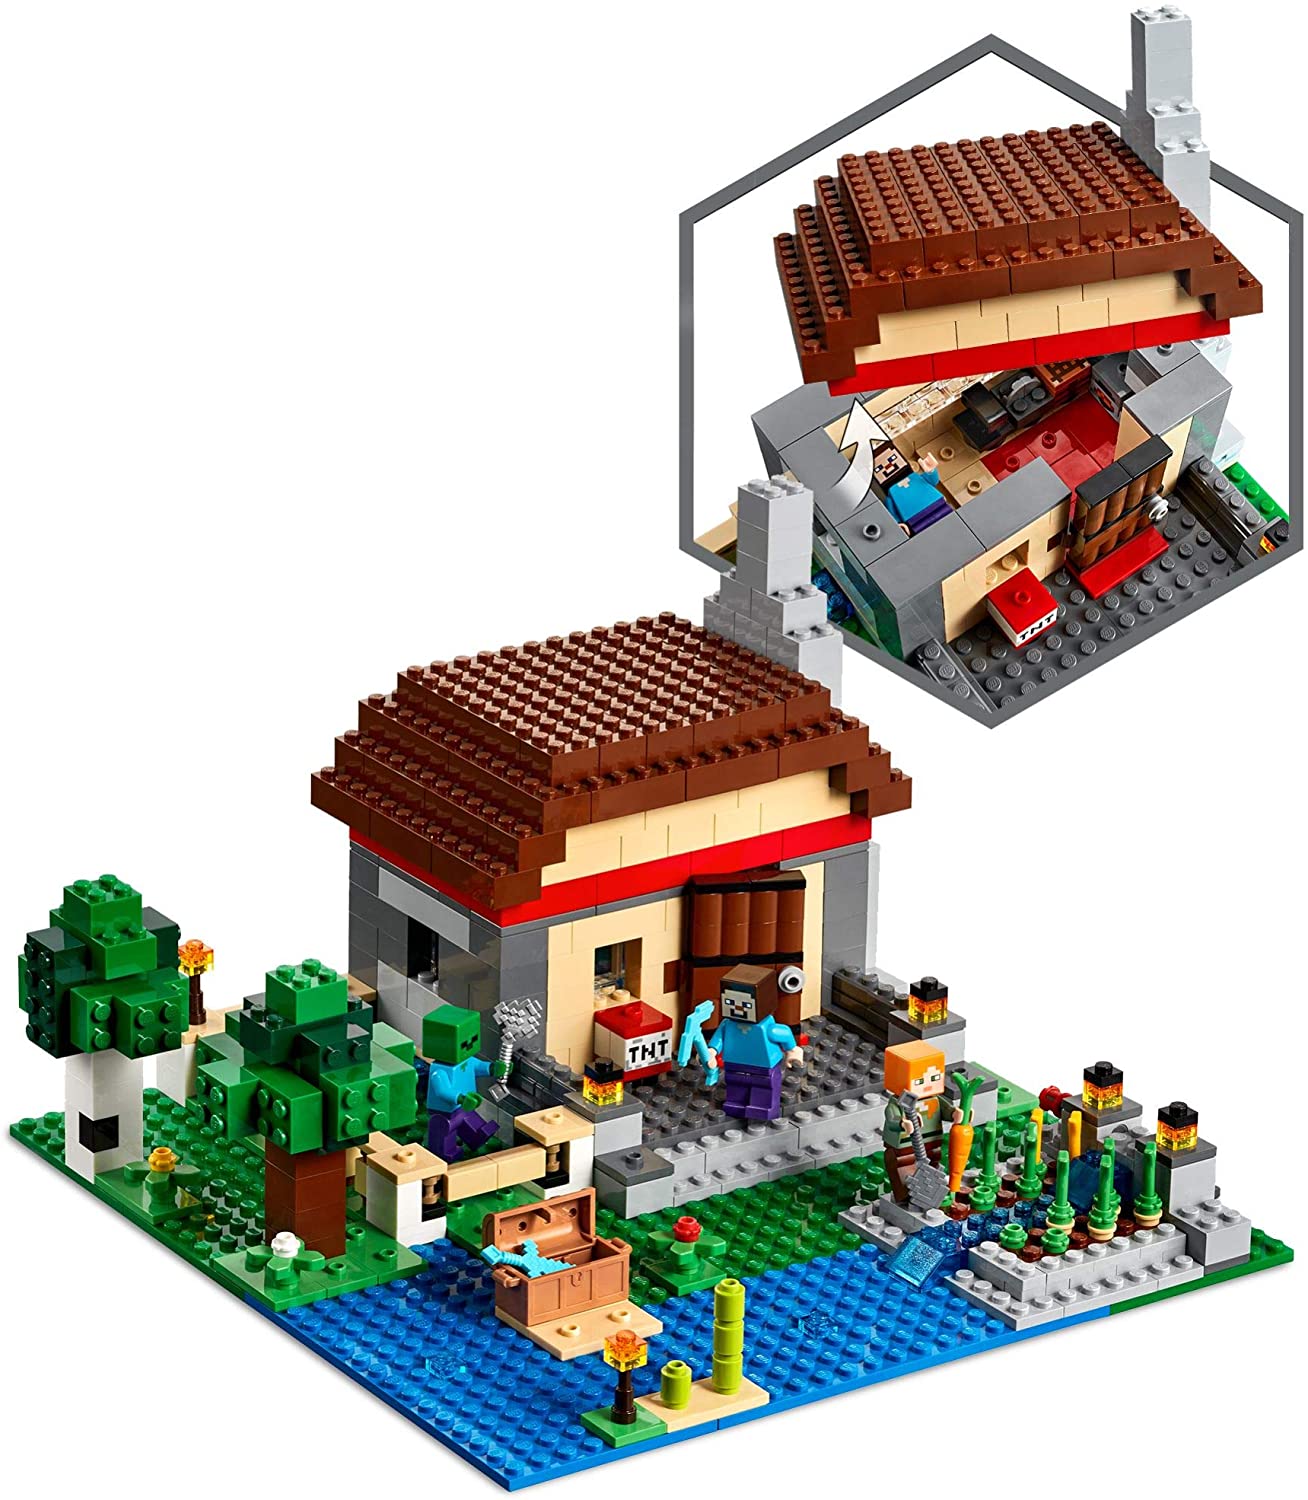 LEGO Minecraft Summer 2020 Sets Revealed on Amazon - The Brick Fan